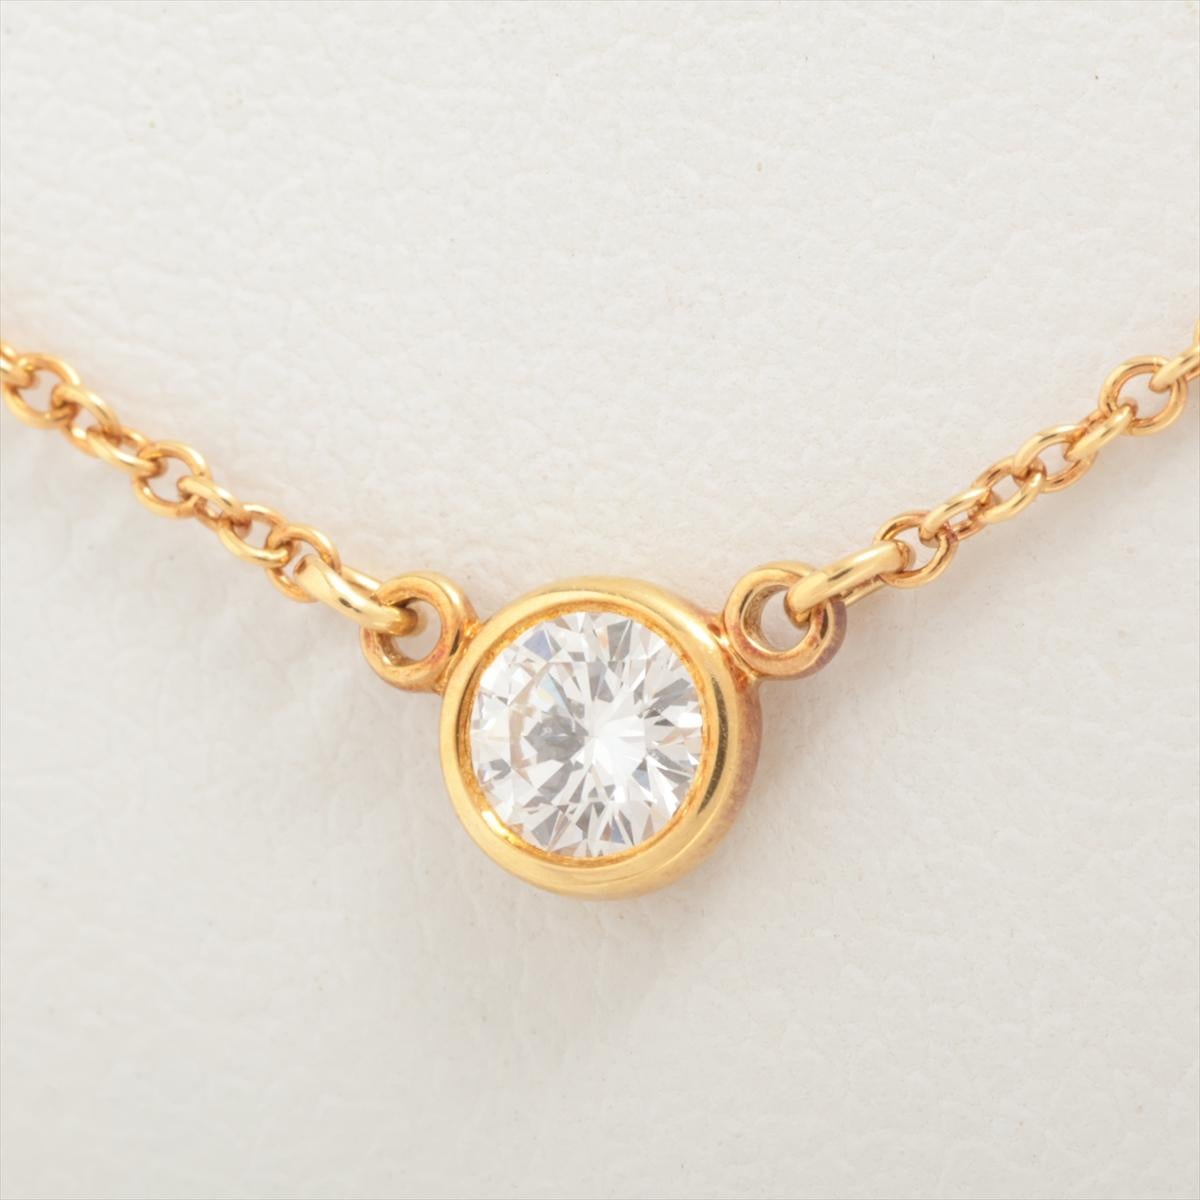 Die Tiffany & Co. Die Diamonds by the Yard Halskette aus Gold ist ein atemberaubendes und vielseitiges Schmuckstück, das das Erbe der Marke an Luxus und Handwerkskunst verkörpert. Die aus hochwertigem Gold gefertigte Halskette besticht durch ihren